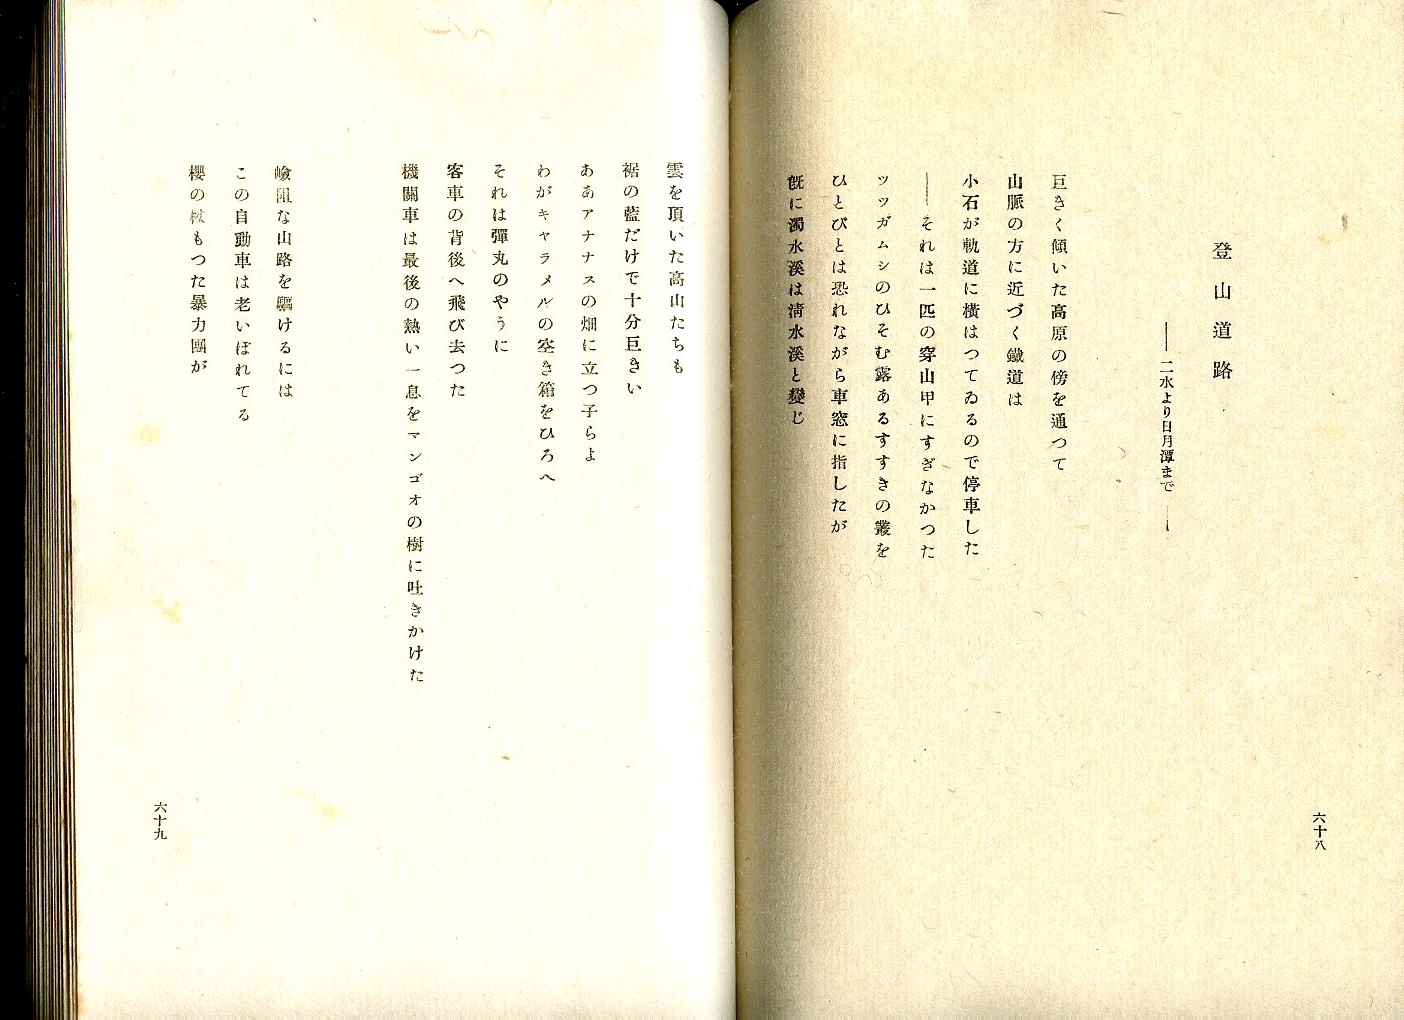 たなかかつみ【田中克己】『詩集西康省』1938